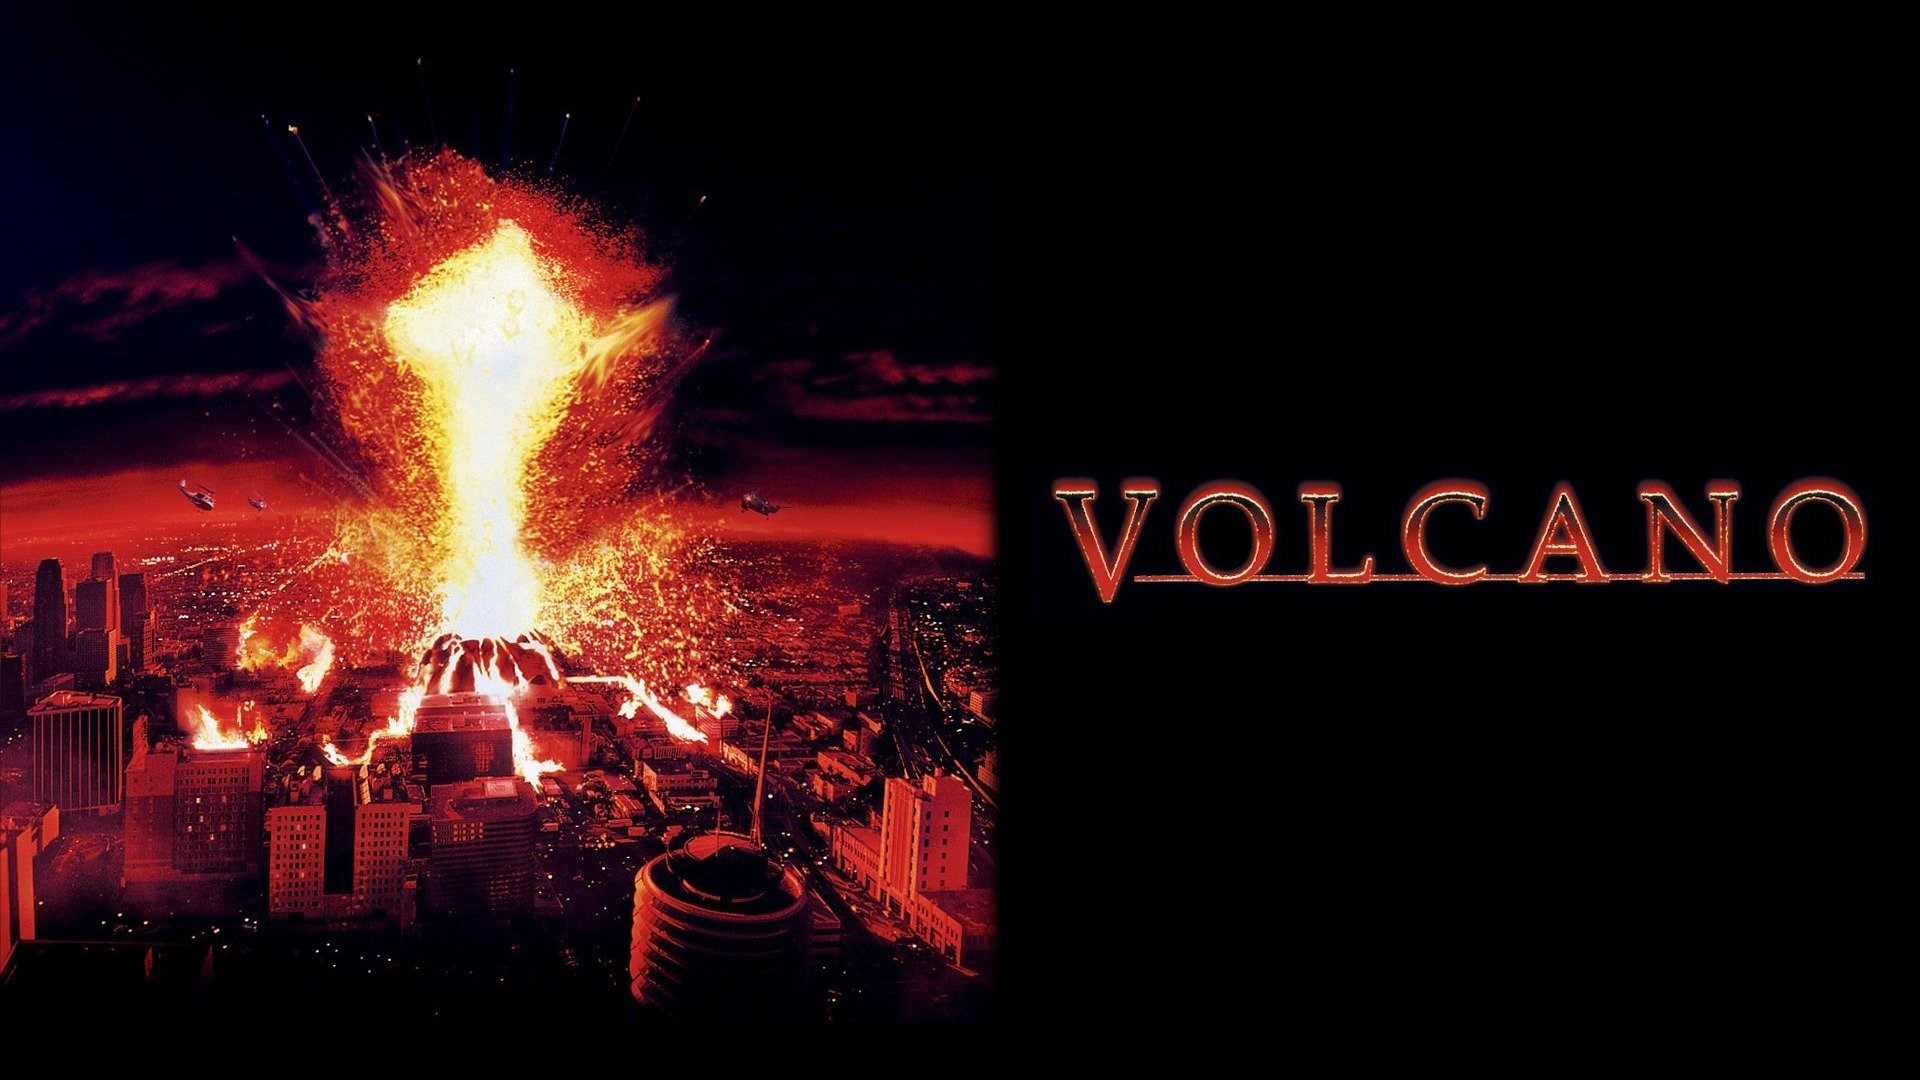 Volcano (1997) ปะทุนรก ล้างปฐพี 